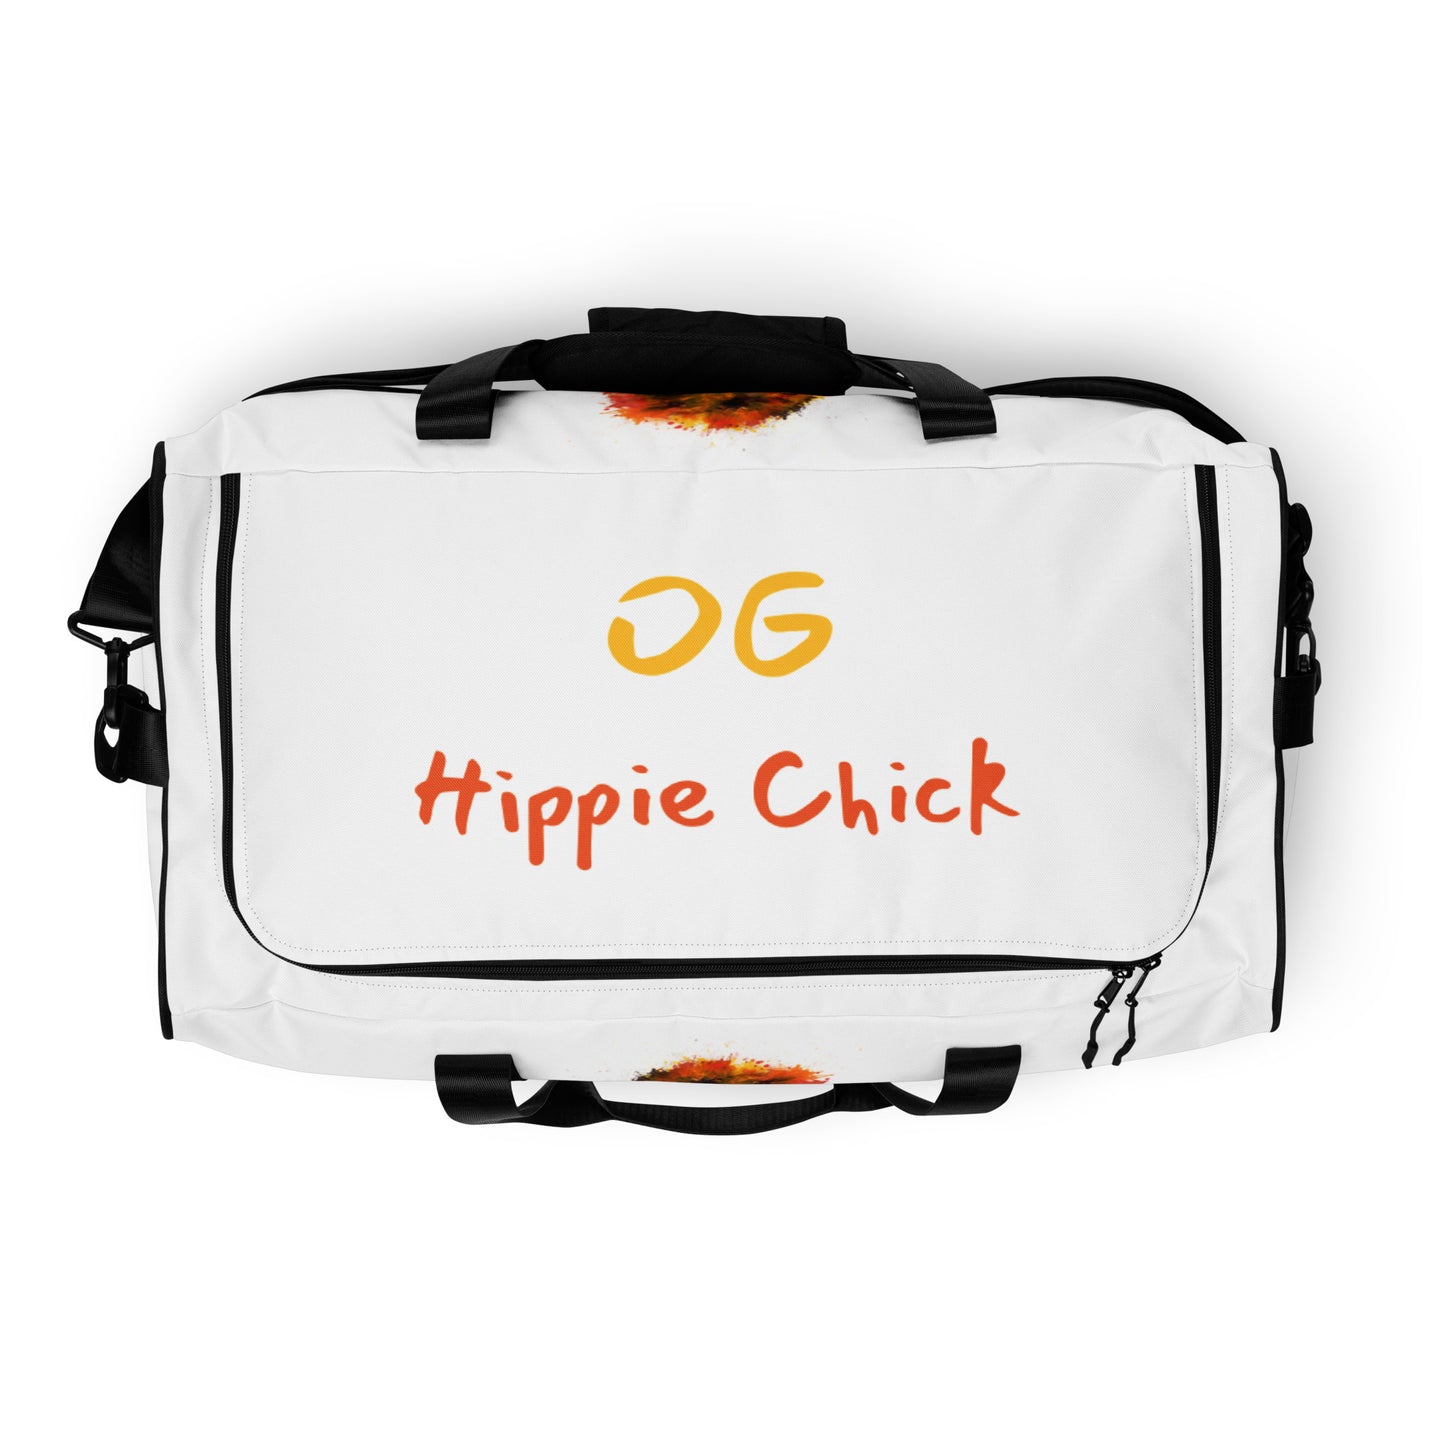 White Duffle Bag - OG Hippie Chick